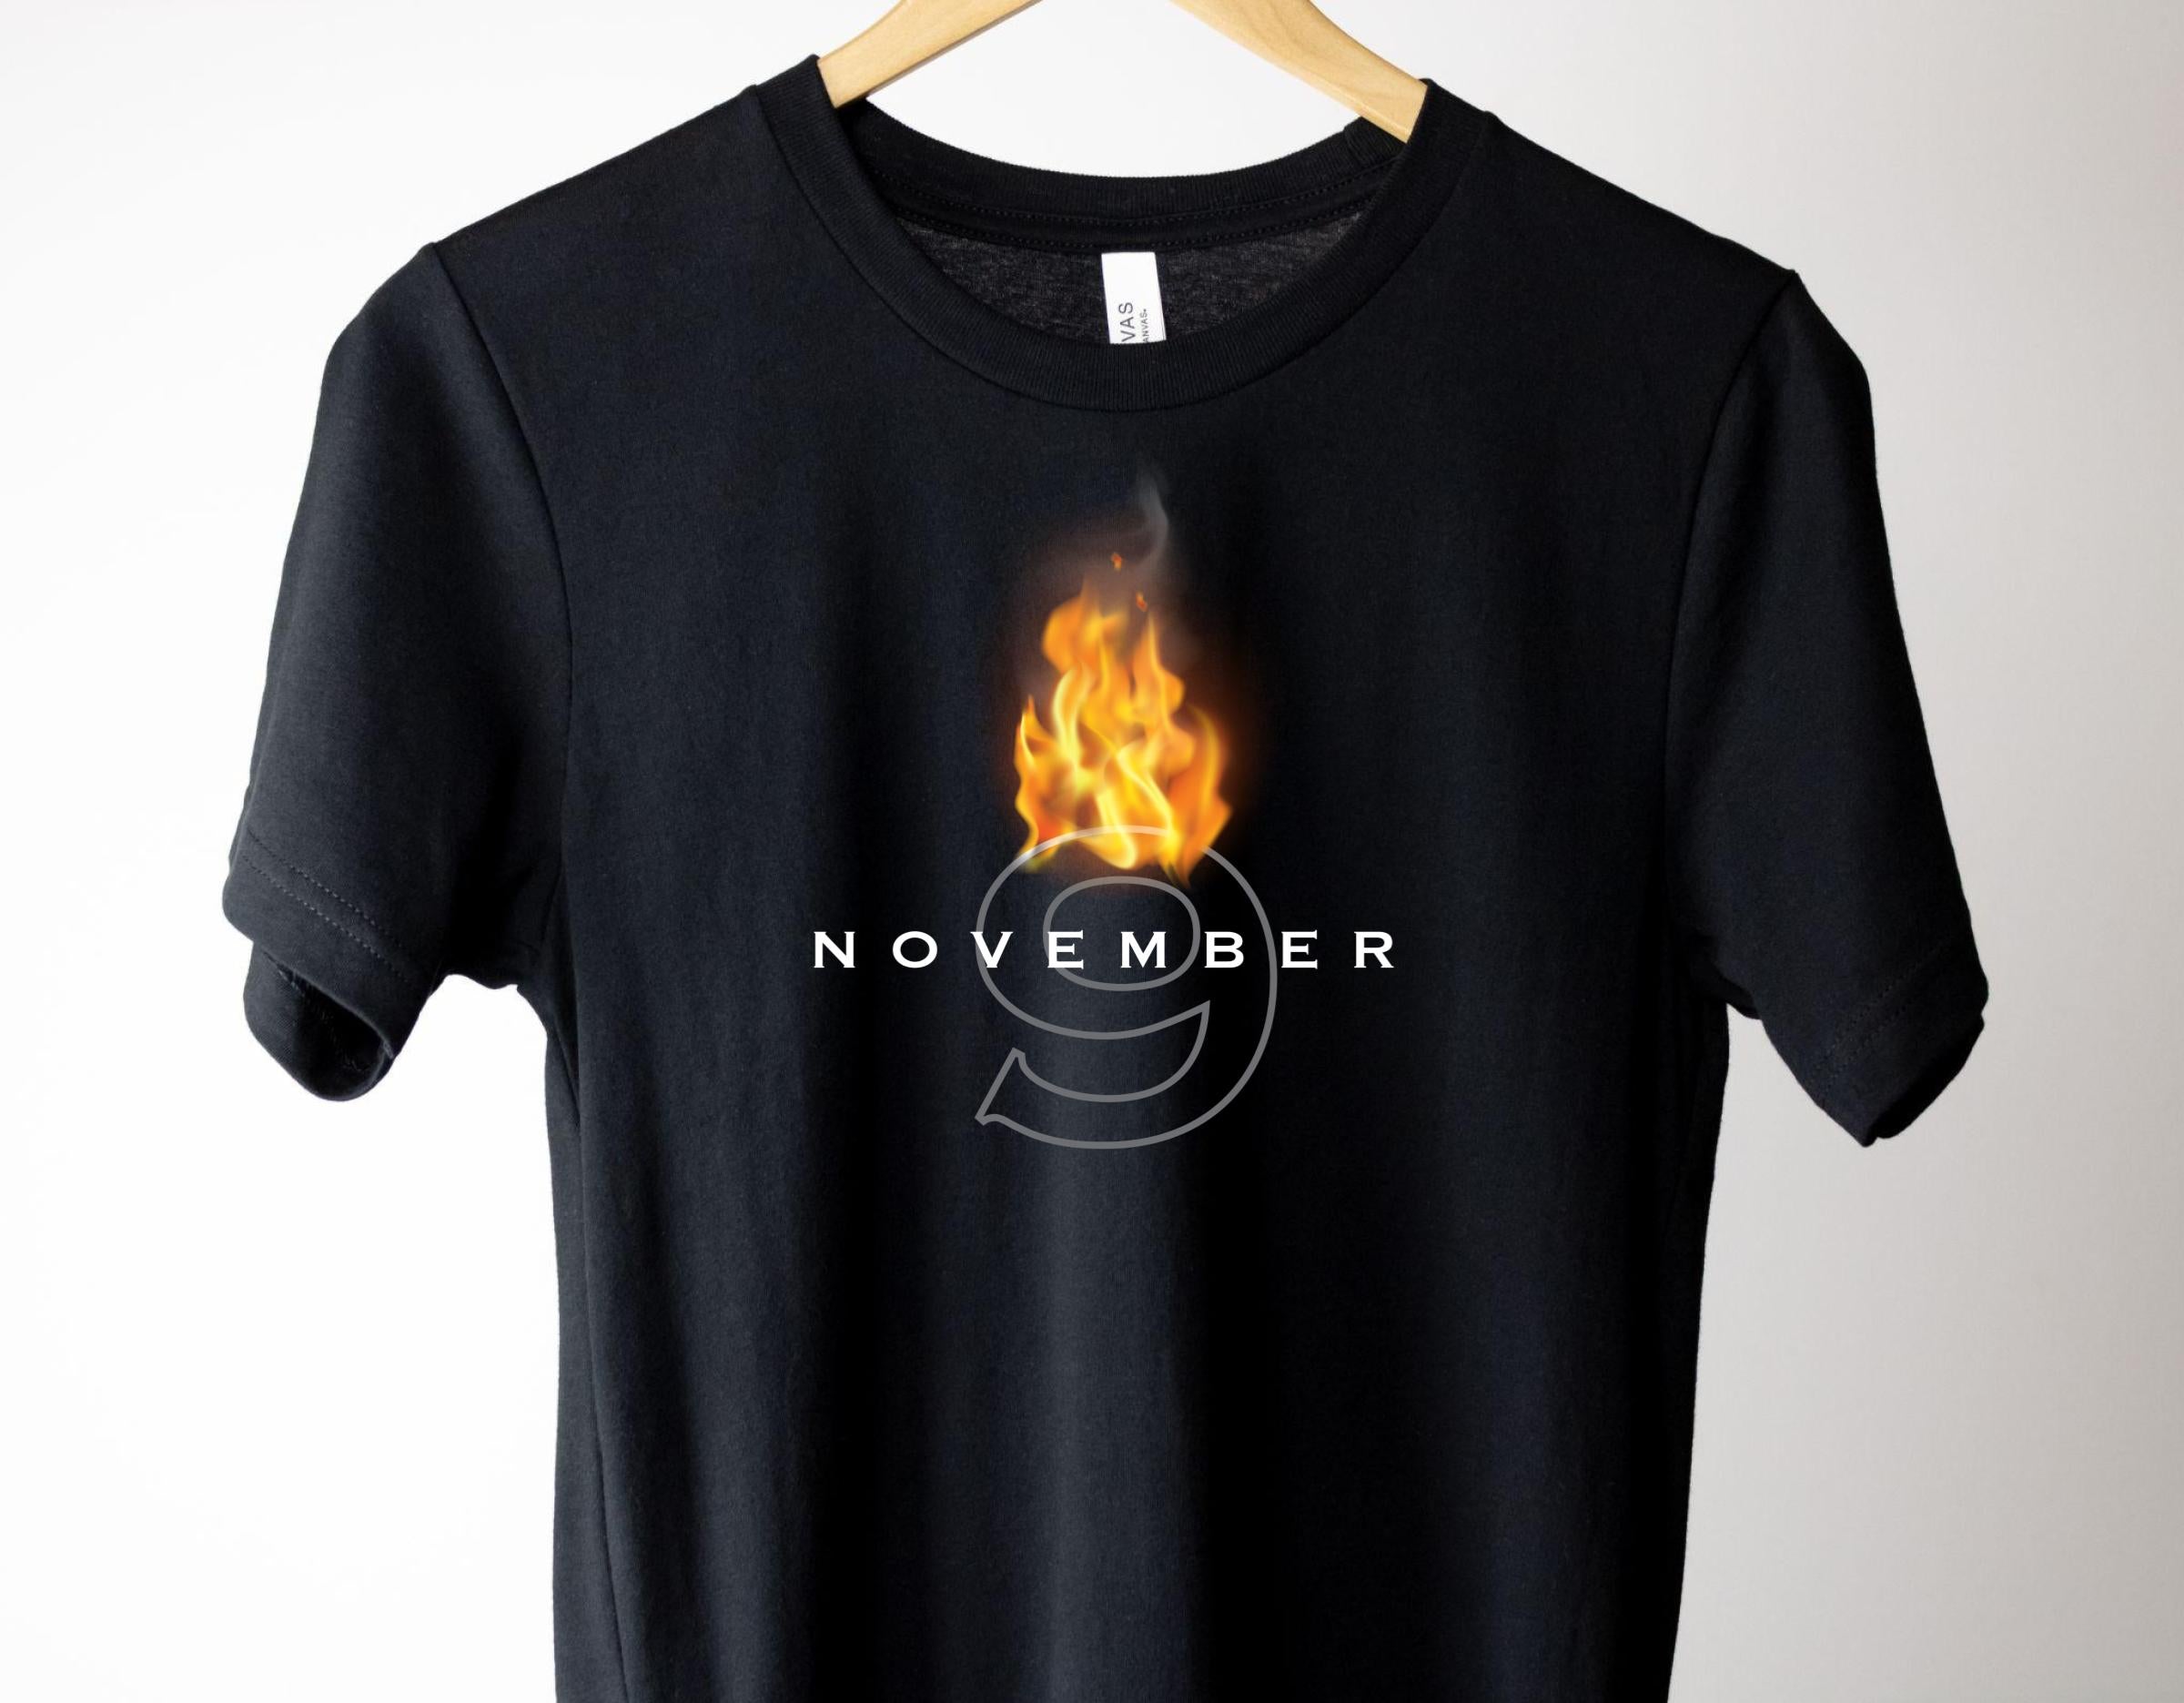 November 9 Tshirt - Colleen Hoover Inspired